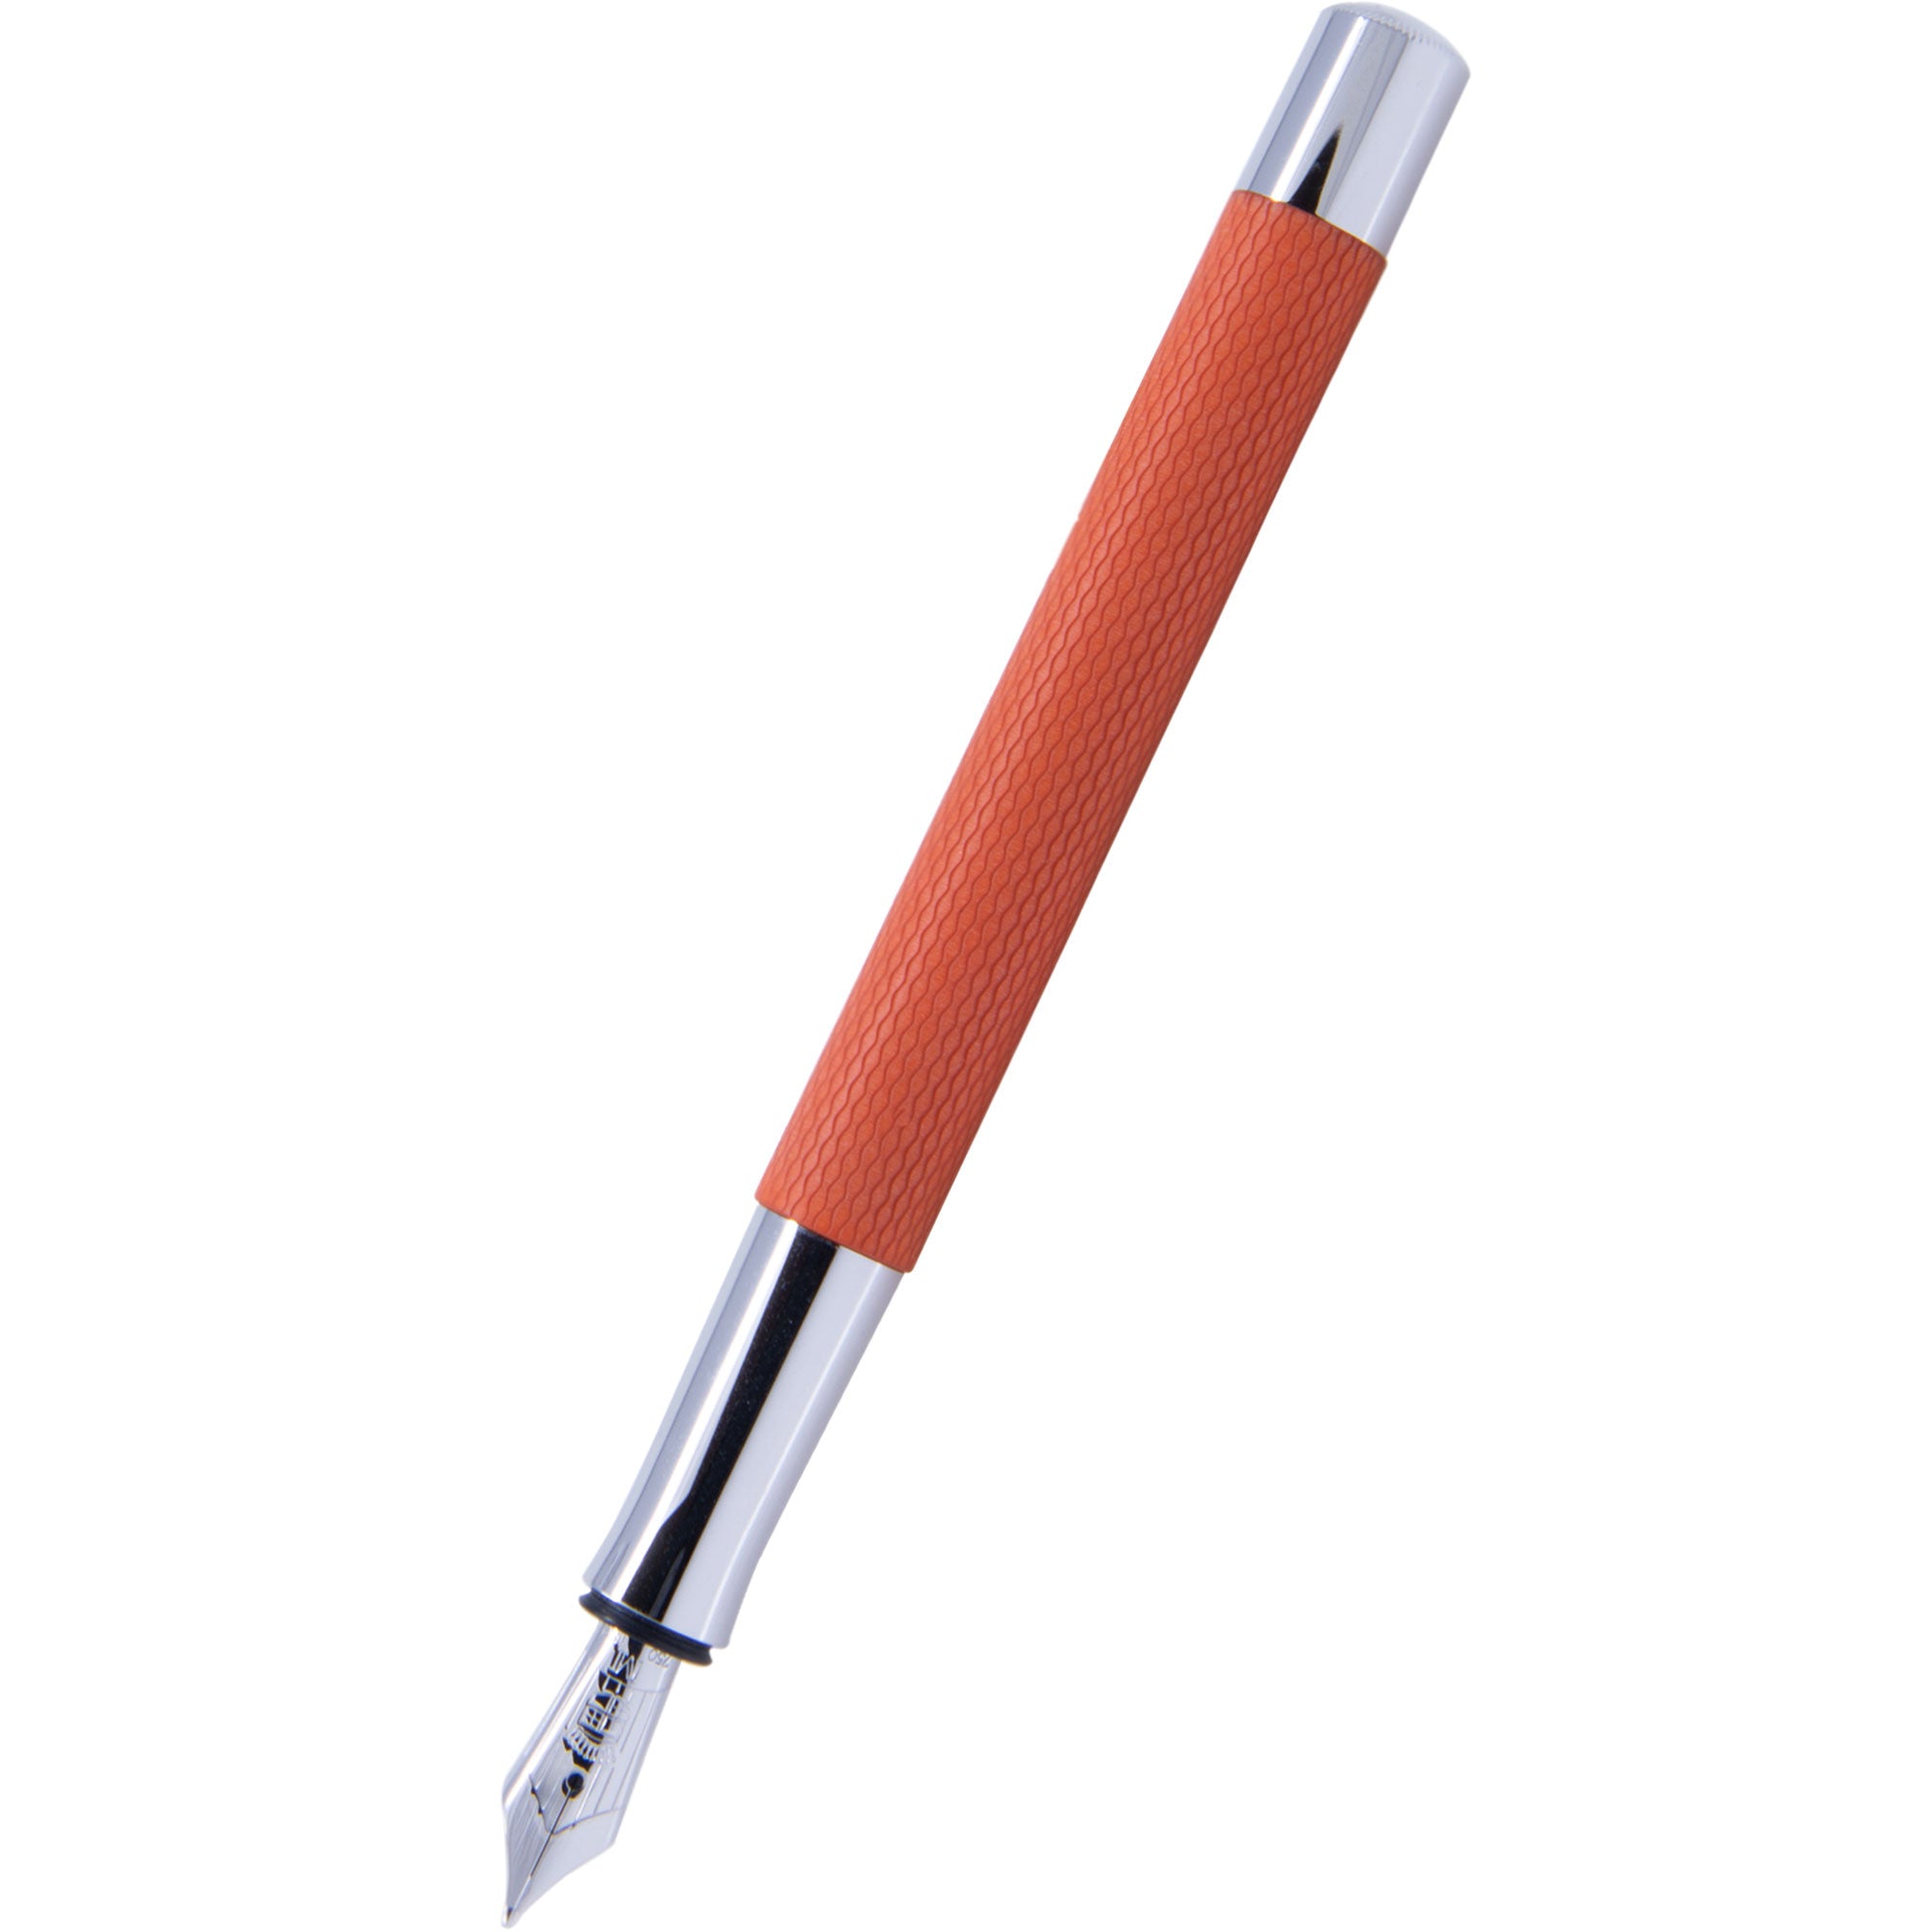 3 Crayons Graphite de Poche Graf von Faber-Castell Guilloché Orange réf  118661